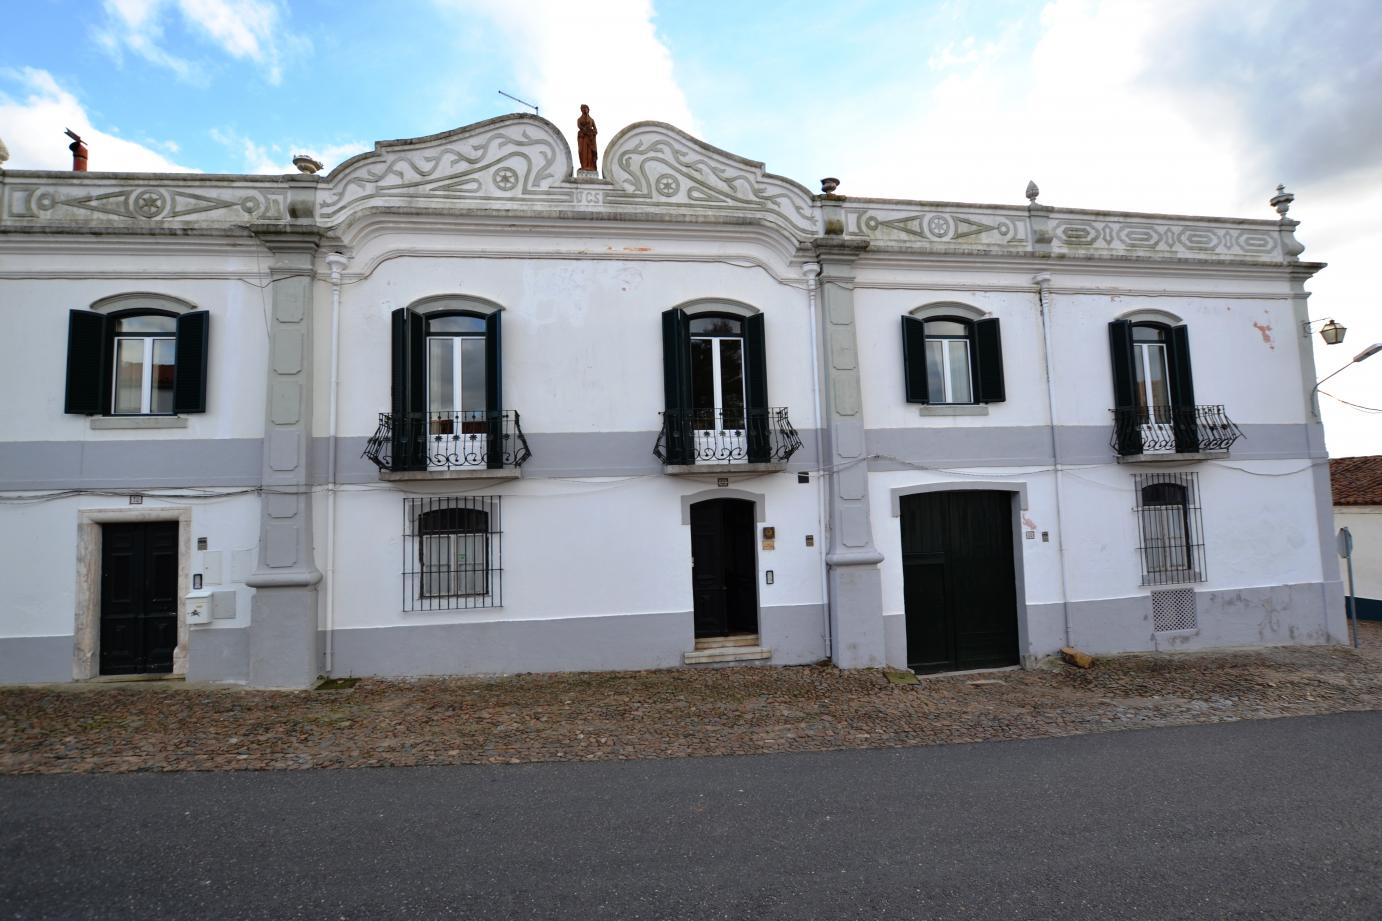 Casa Santos Murteira - Alcaçovas - Alentejo